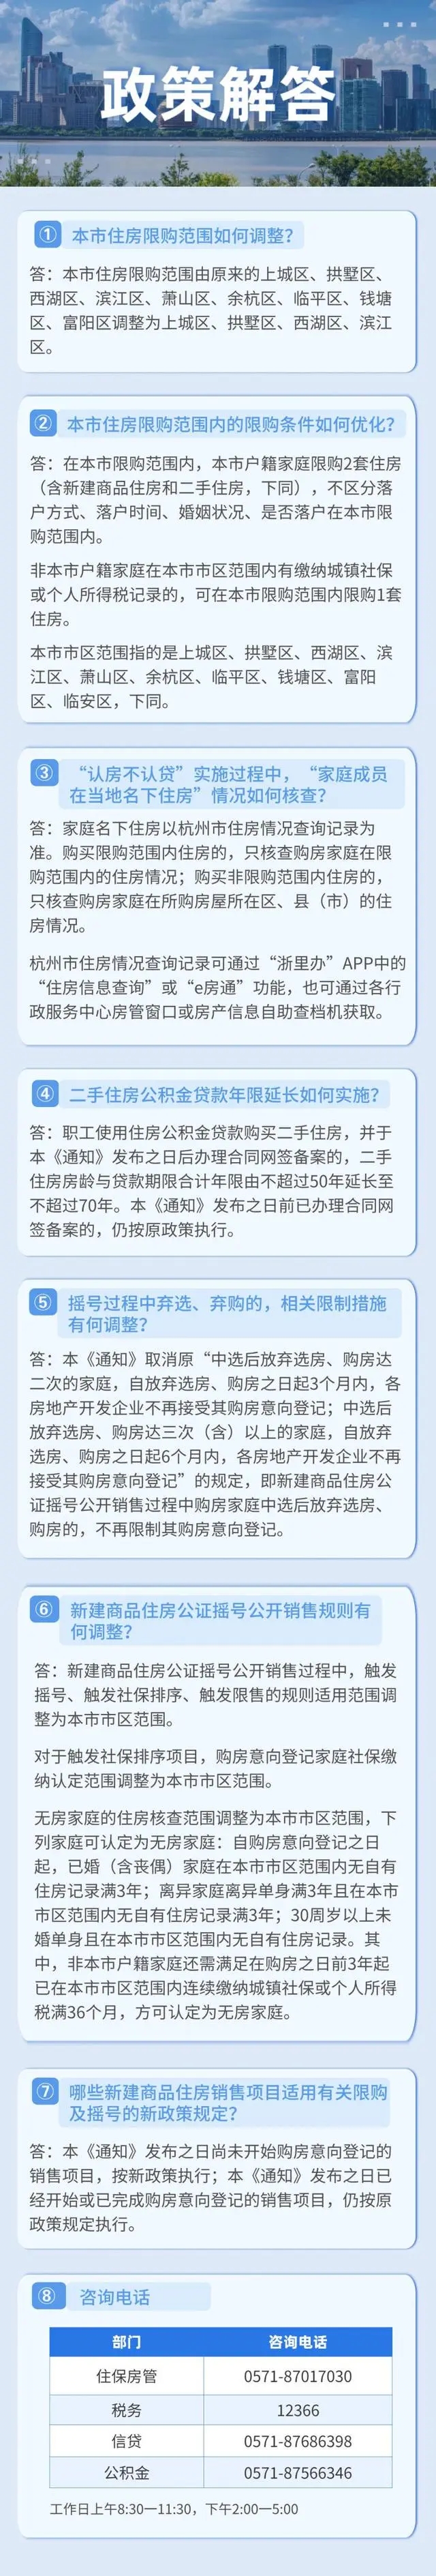 杭州各区住房限购范围调整更新